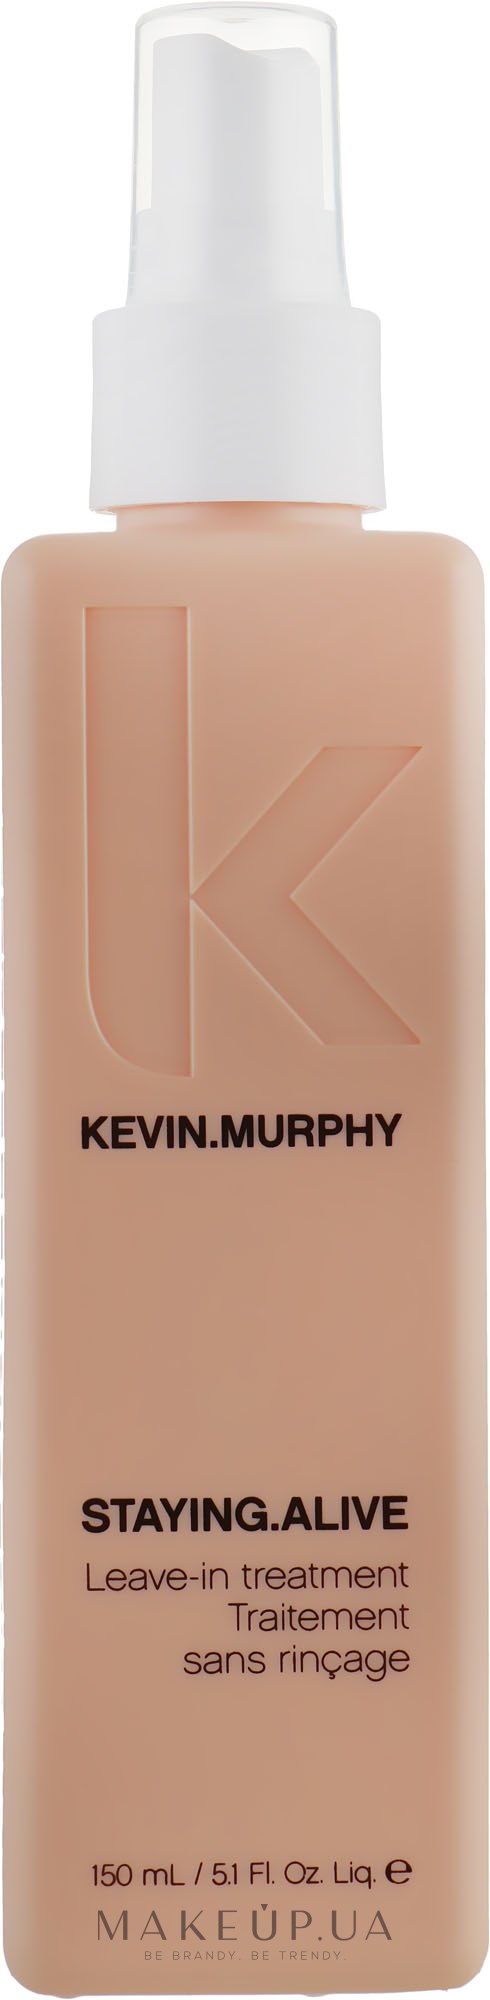 Несмываемый спрей-уход для увлажнения и защиты волос - Kevin.Murphy Staying.Alive Treatment  — фото 150ml